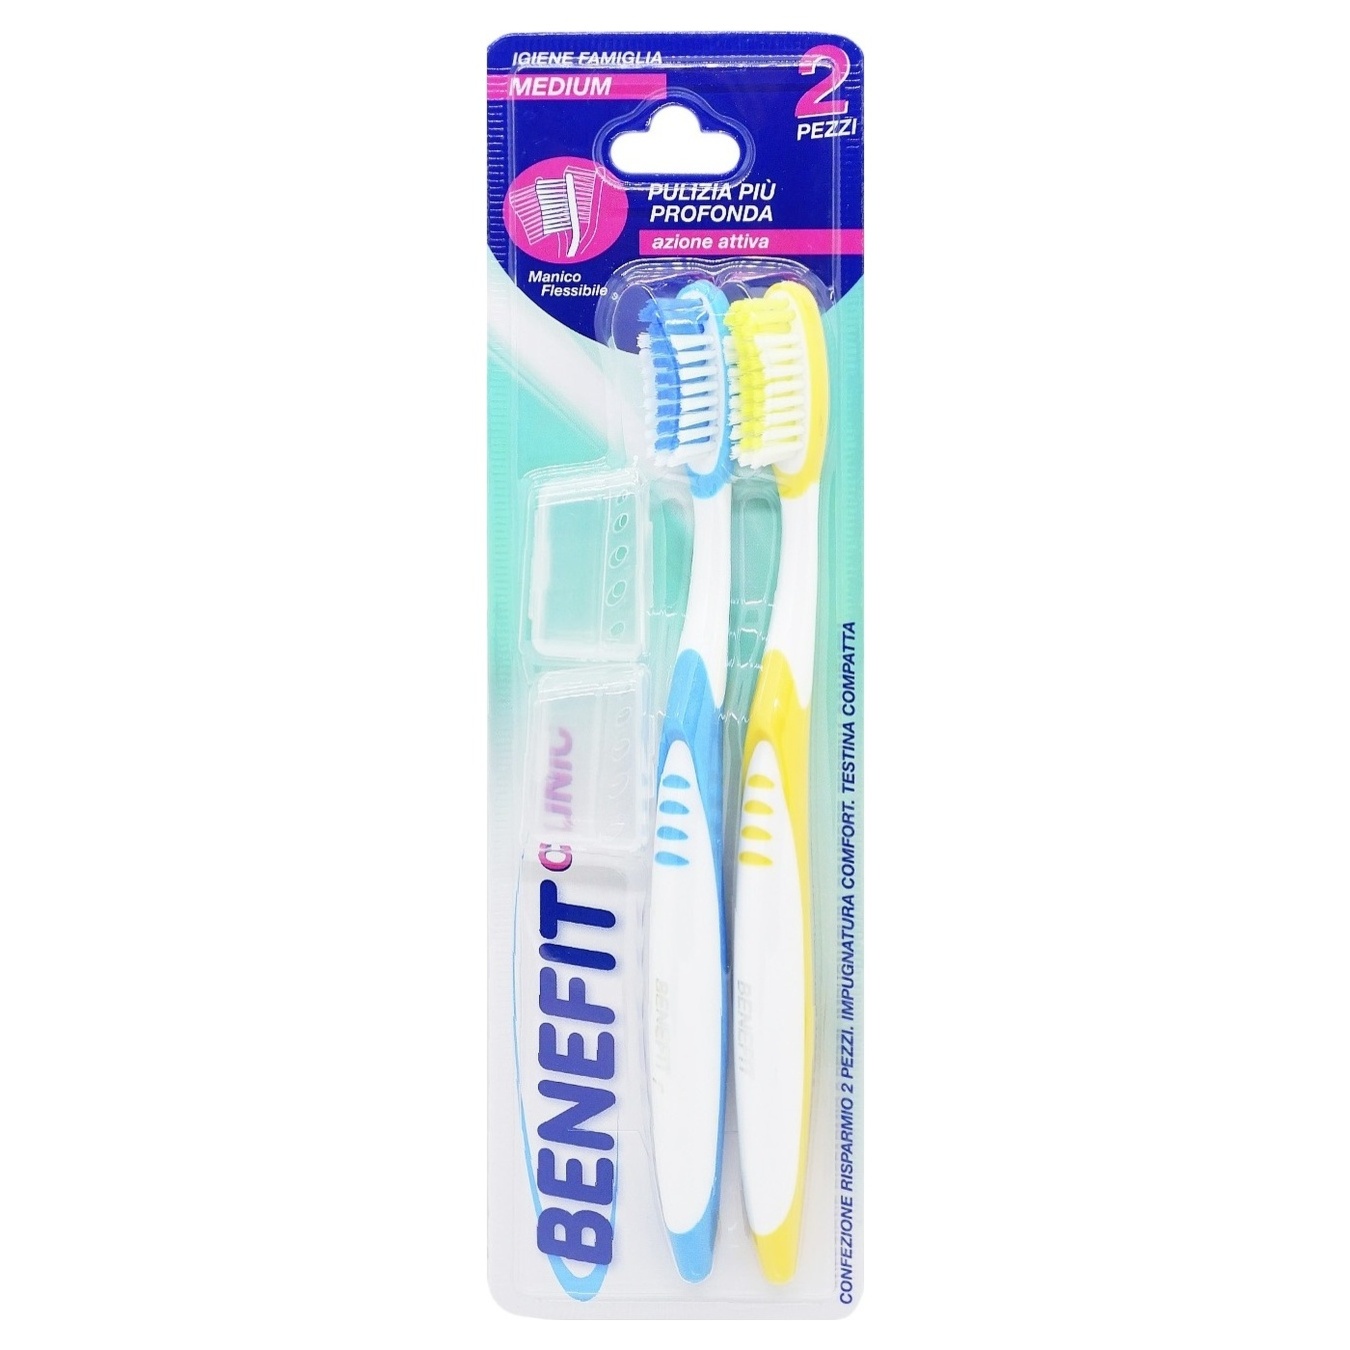 Toothbrush Miimil Benefit 2pcs